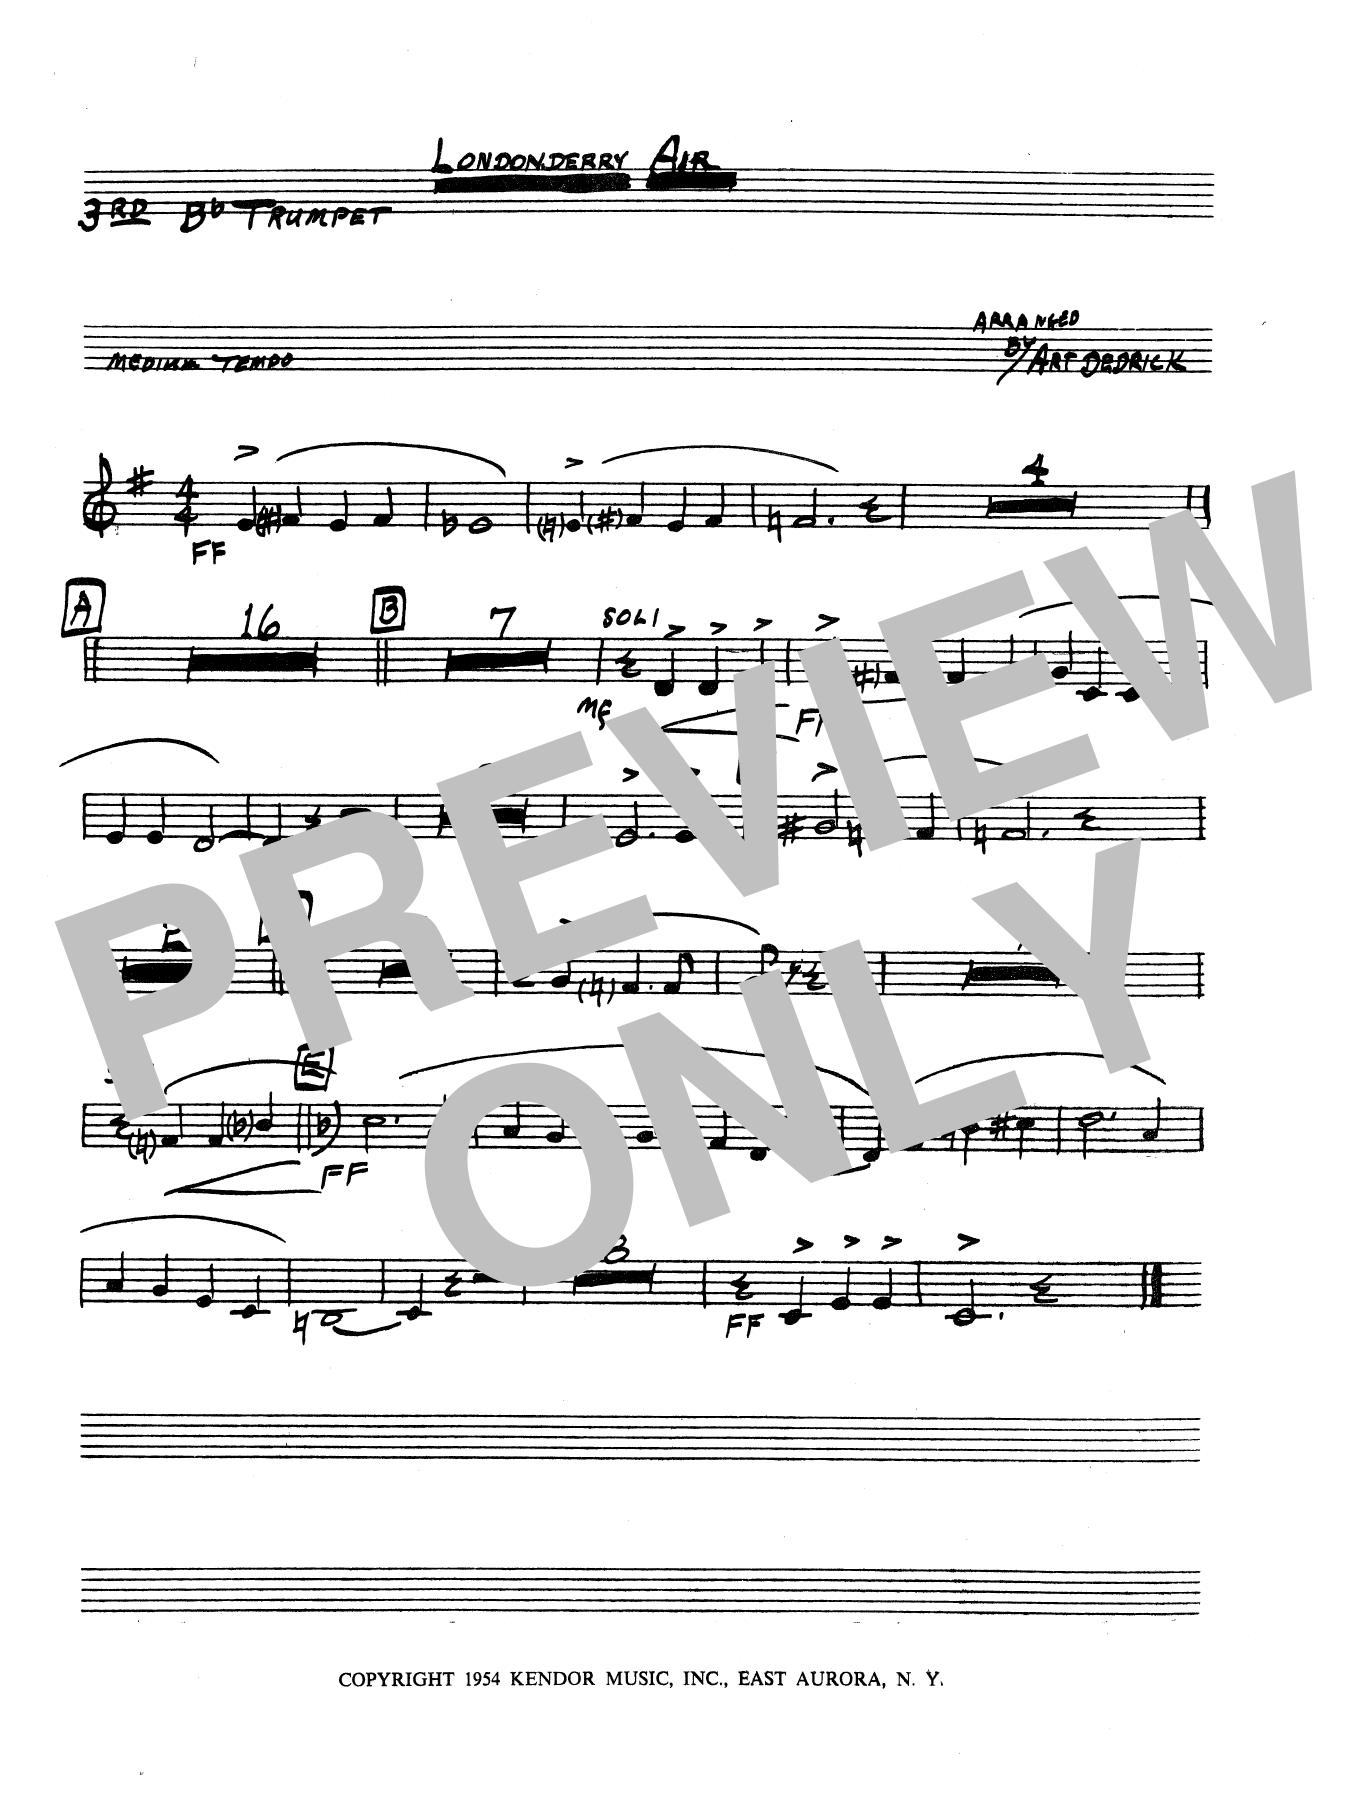 Download Art Dedrick Londonderry Air - 3rd Bb Trumpet Sheet Music